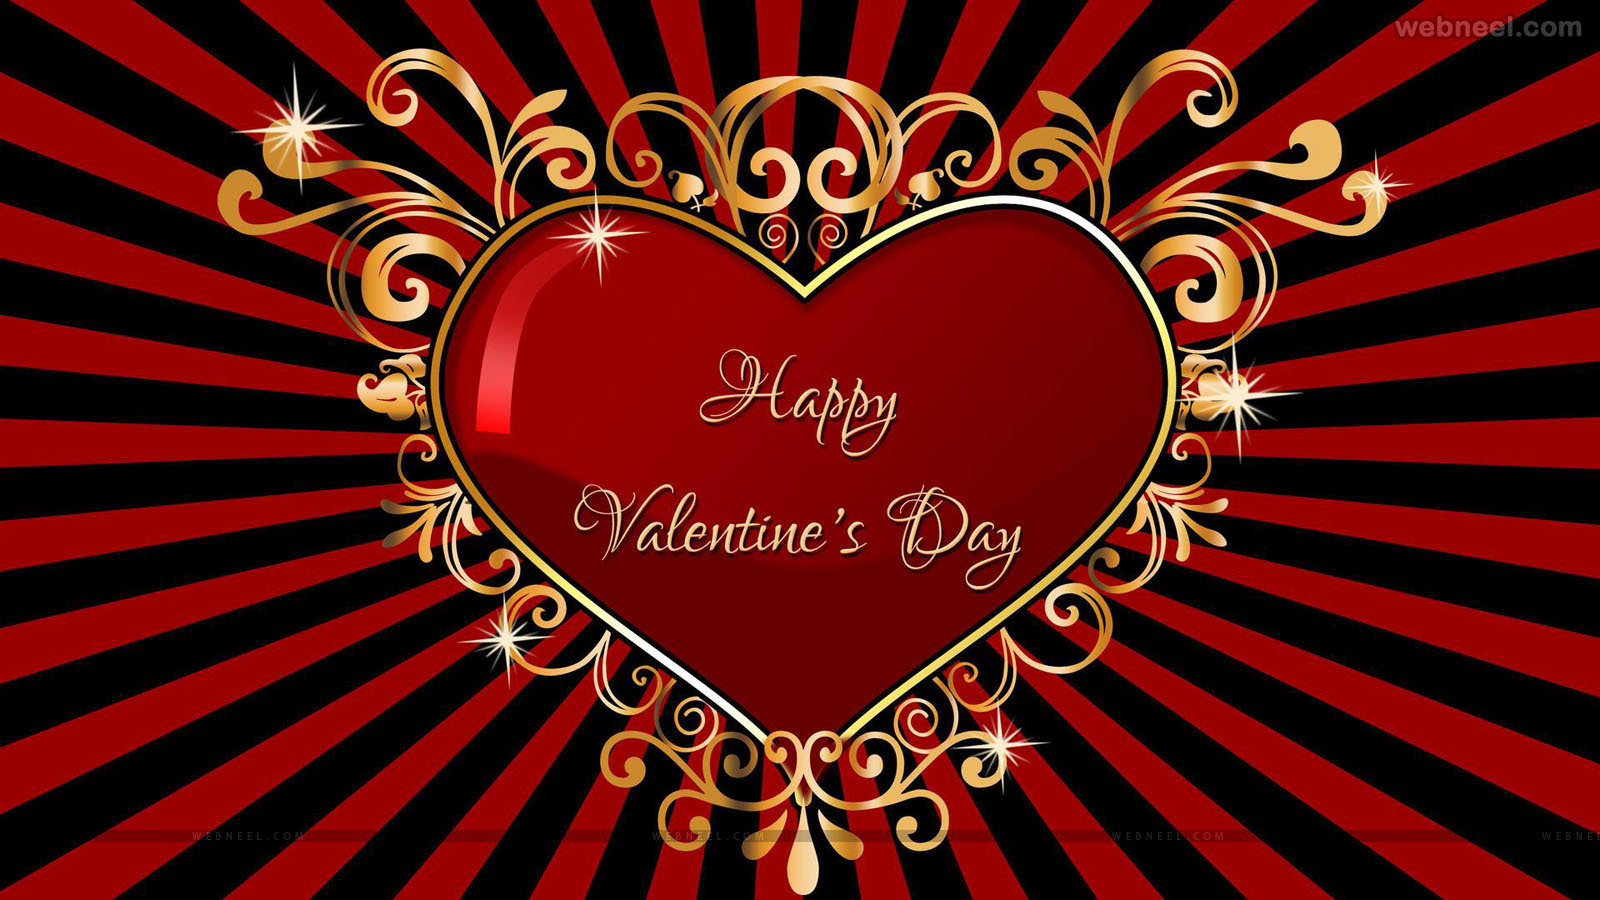 felice giorno di san valentino wallpaper hd,cuore,rosso,san valentino,testo,amore